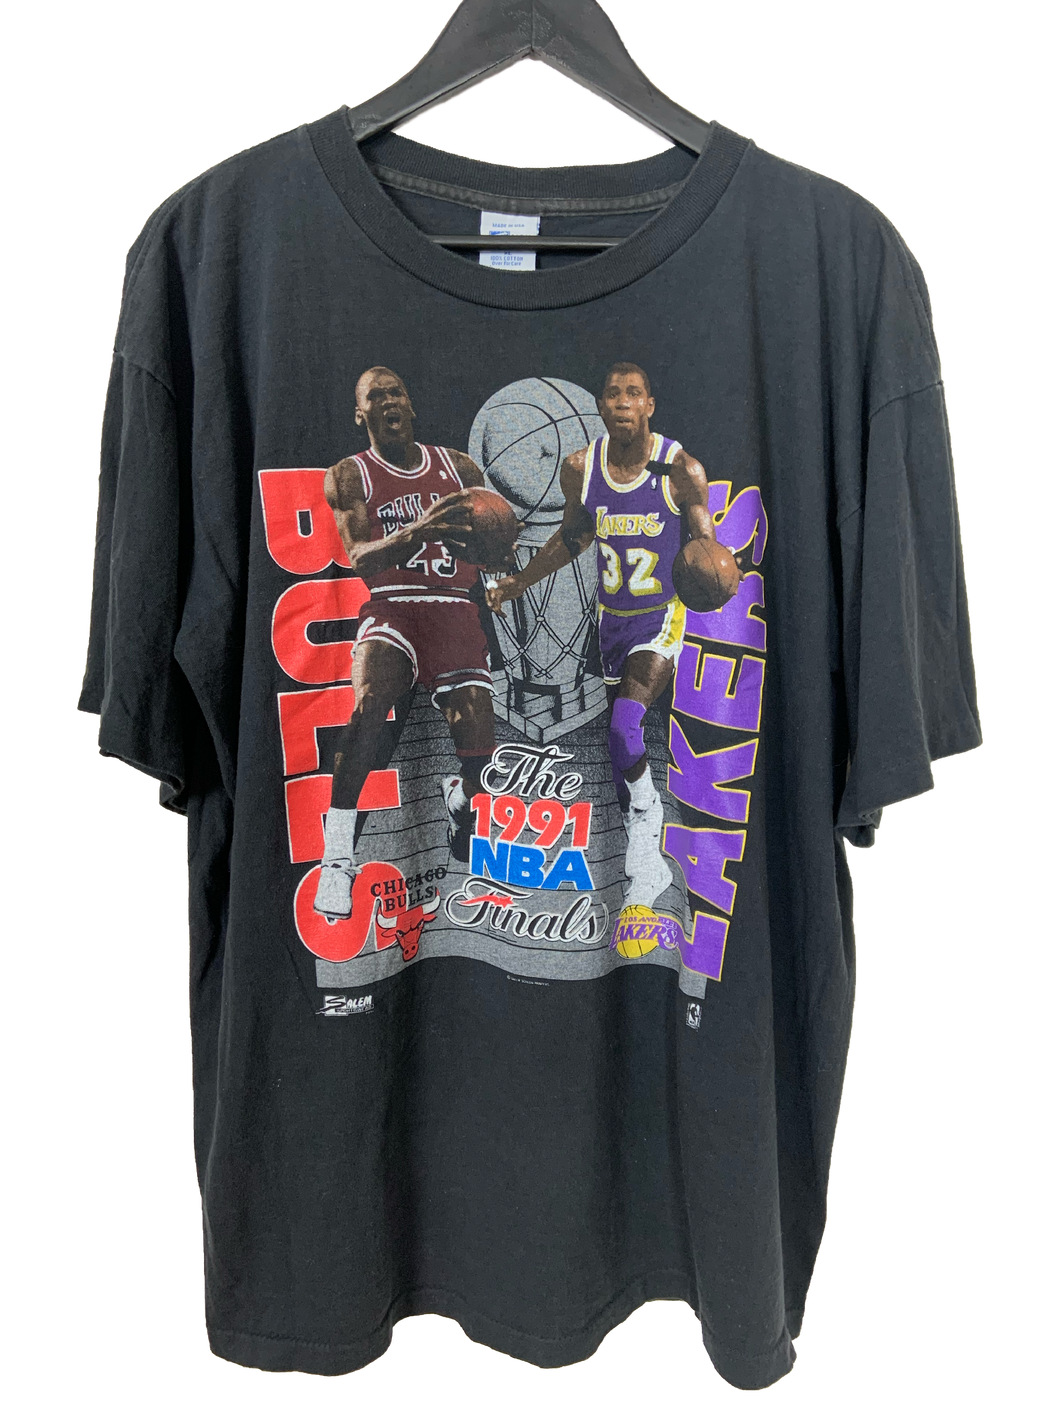 1991 BULLS VS LAKERS NBA FINALS 'SS' TEE - XL